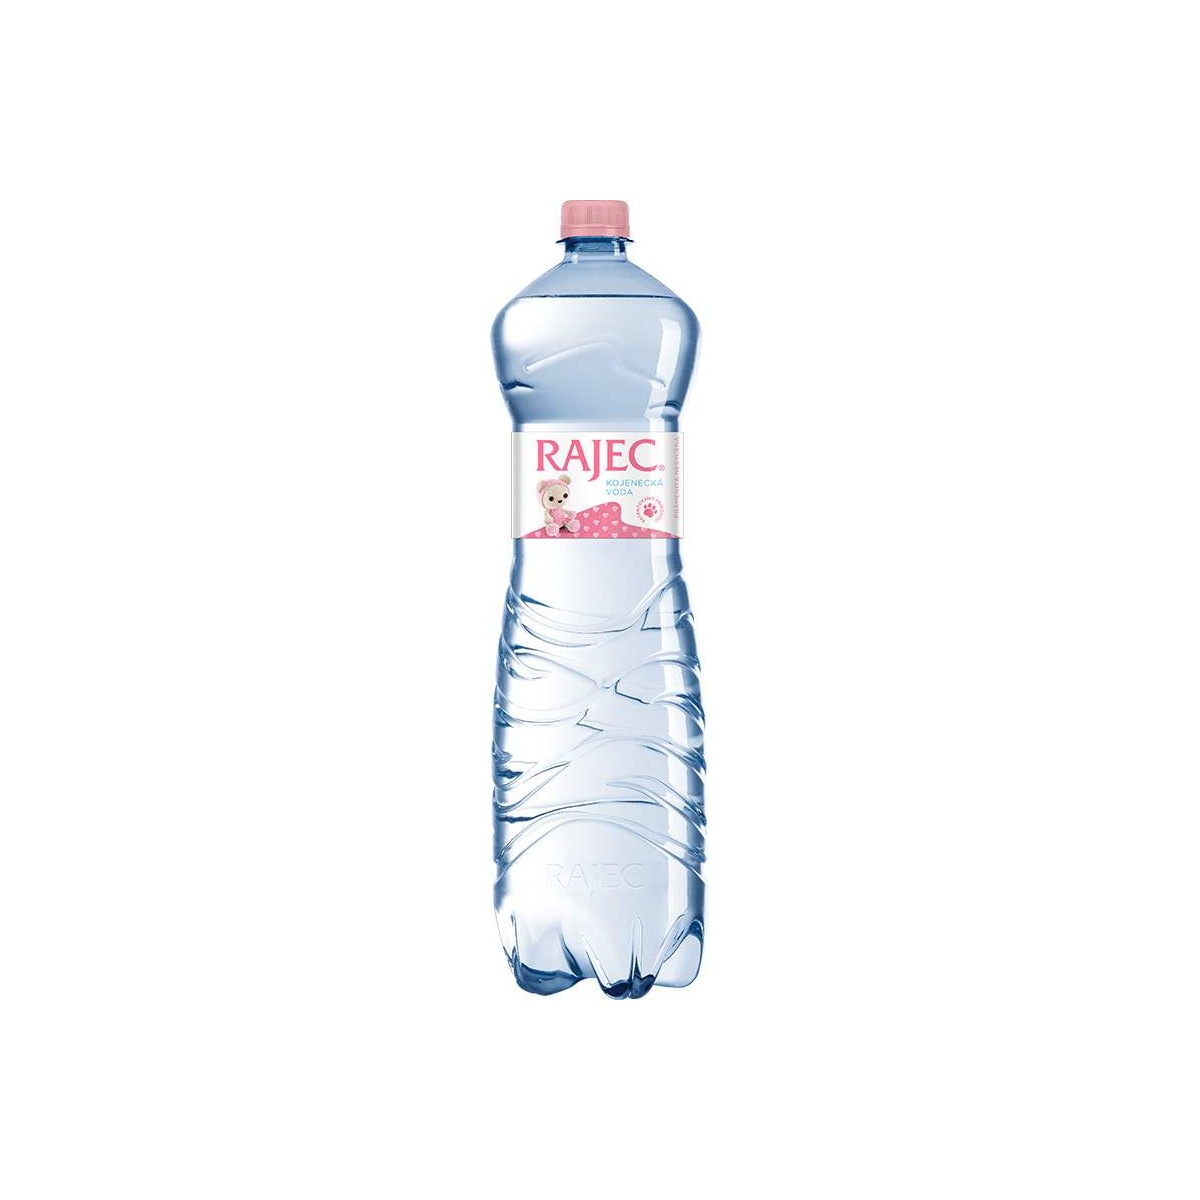 Rajec Kojenecká voda 1,5l - PET